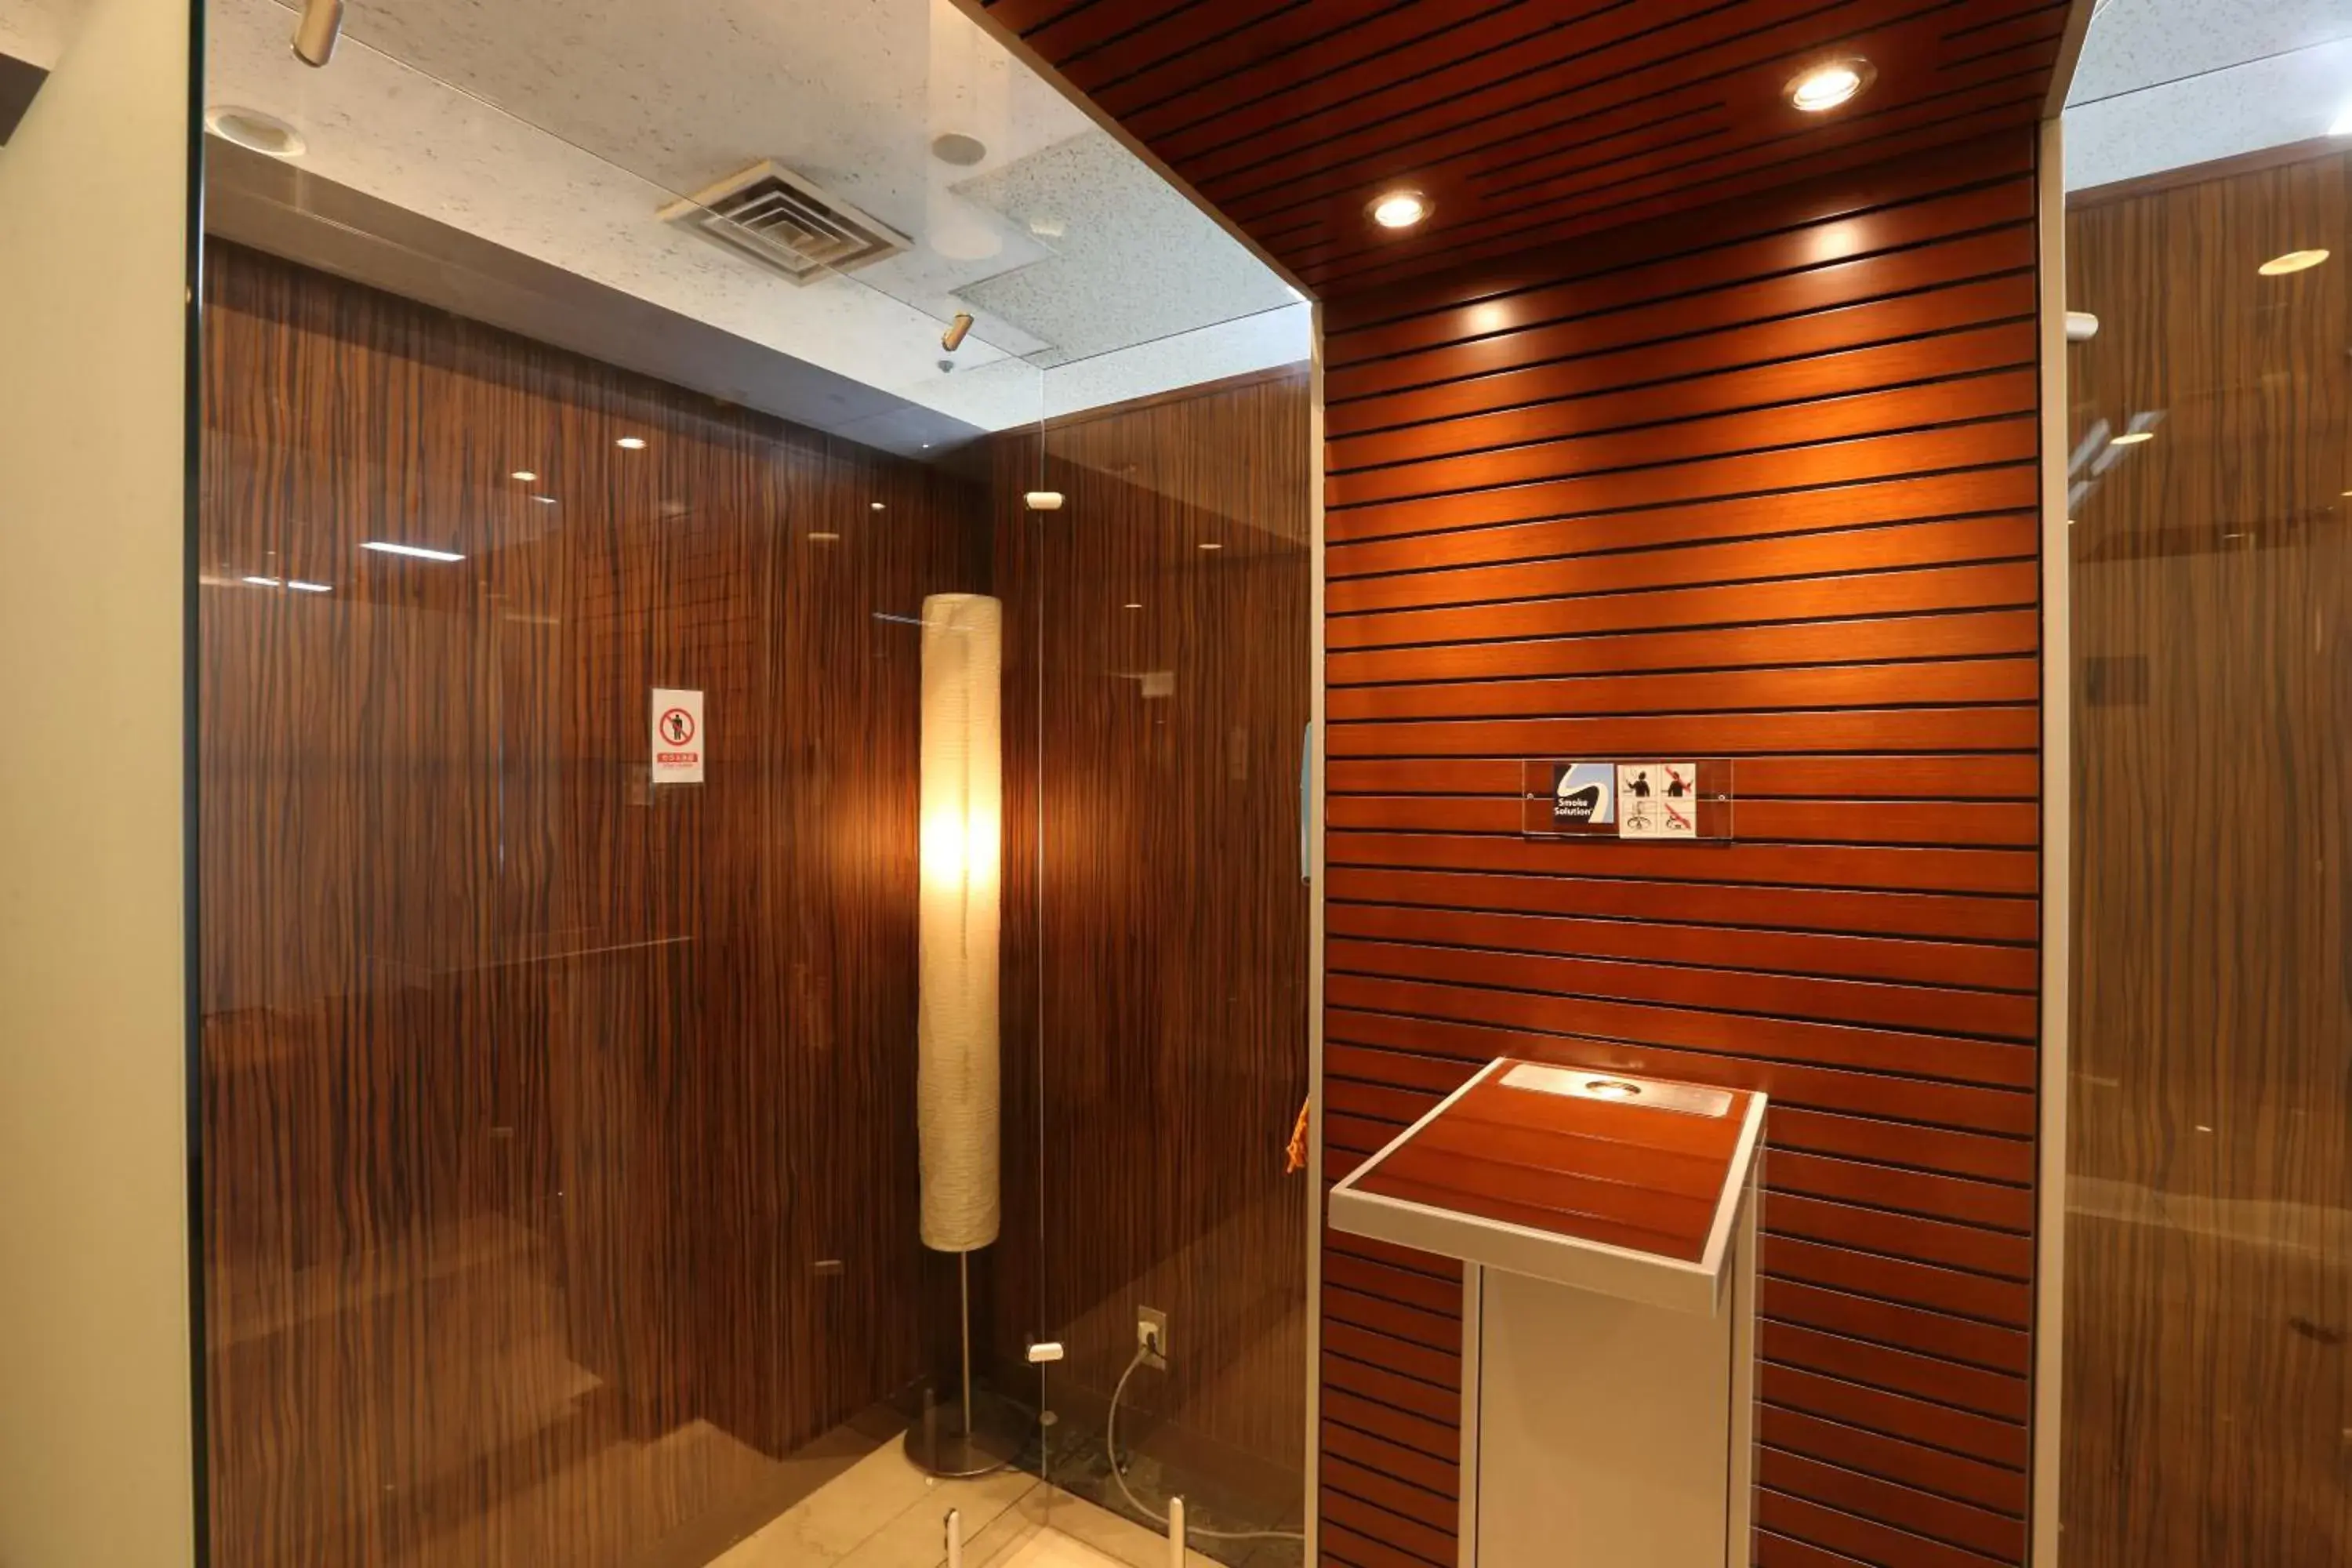 Lobby or reception, Bathroom in Osaka Tokyu Rei Hotel